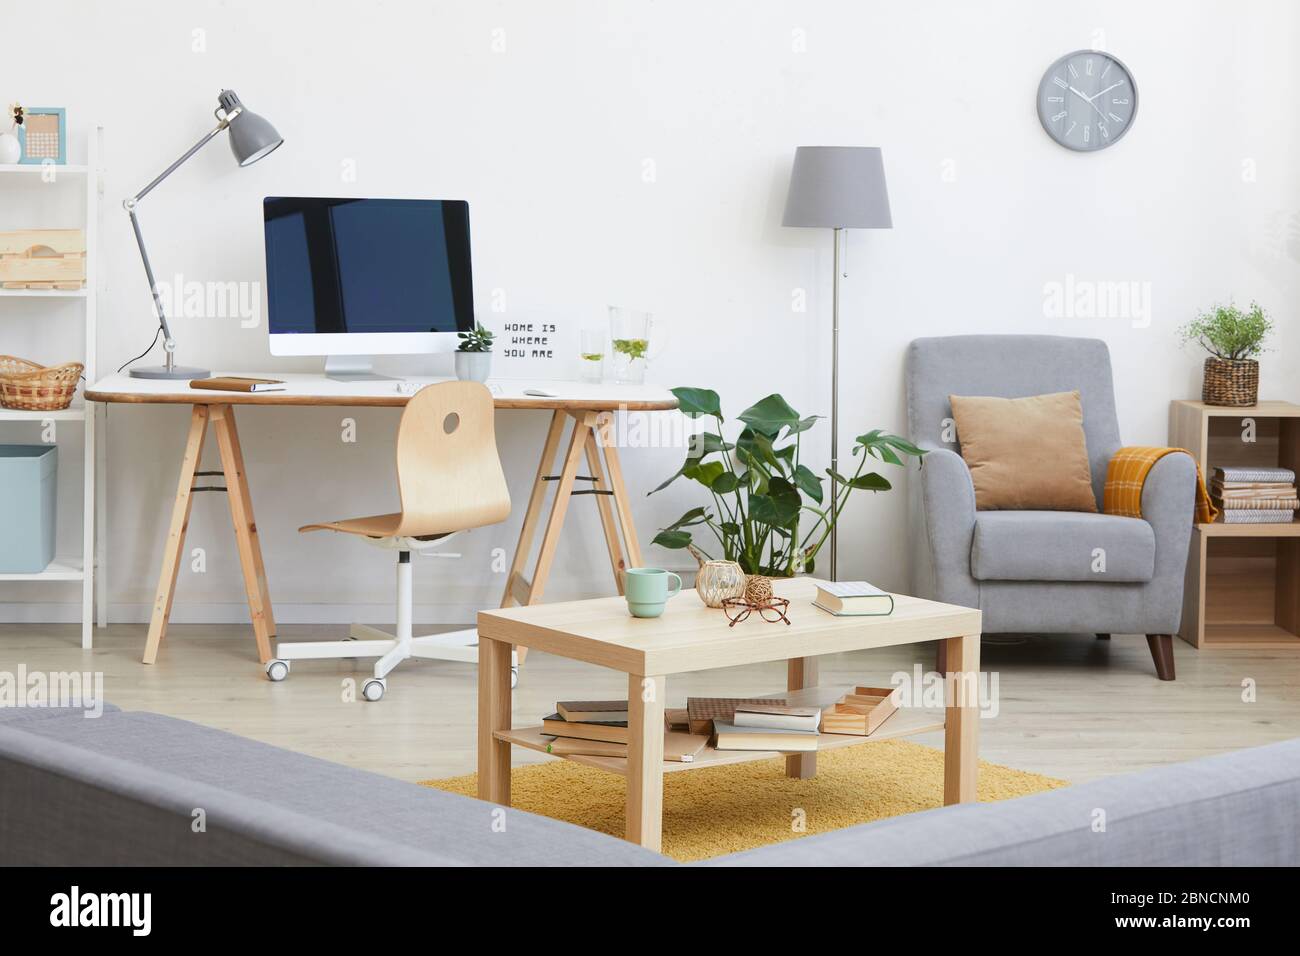 Immagine del soggiorno con posto di lavoro con monitor per computer su di esso e altri mobili moderni in casa Foto Stock